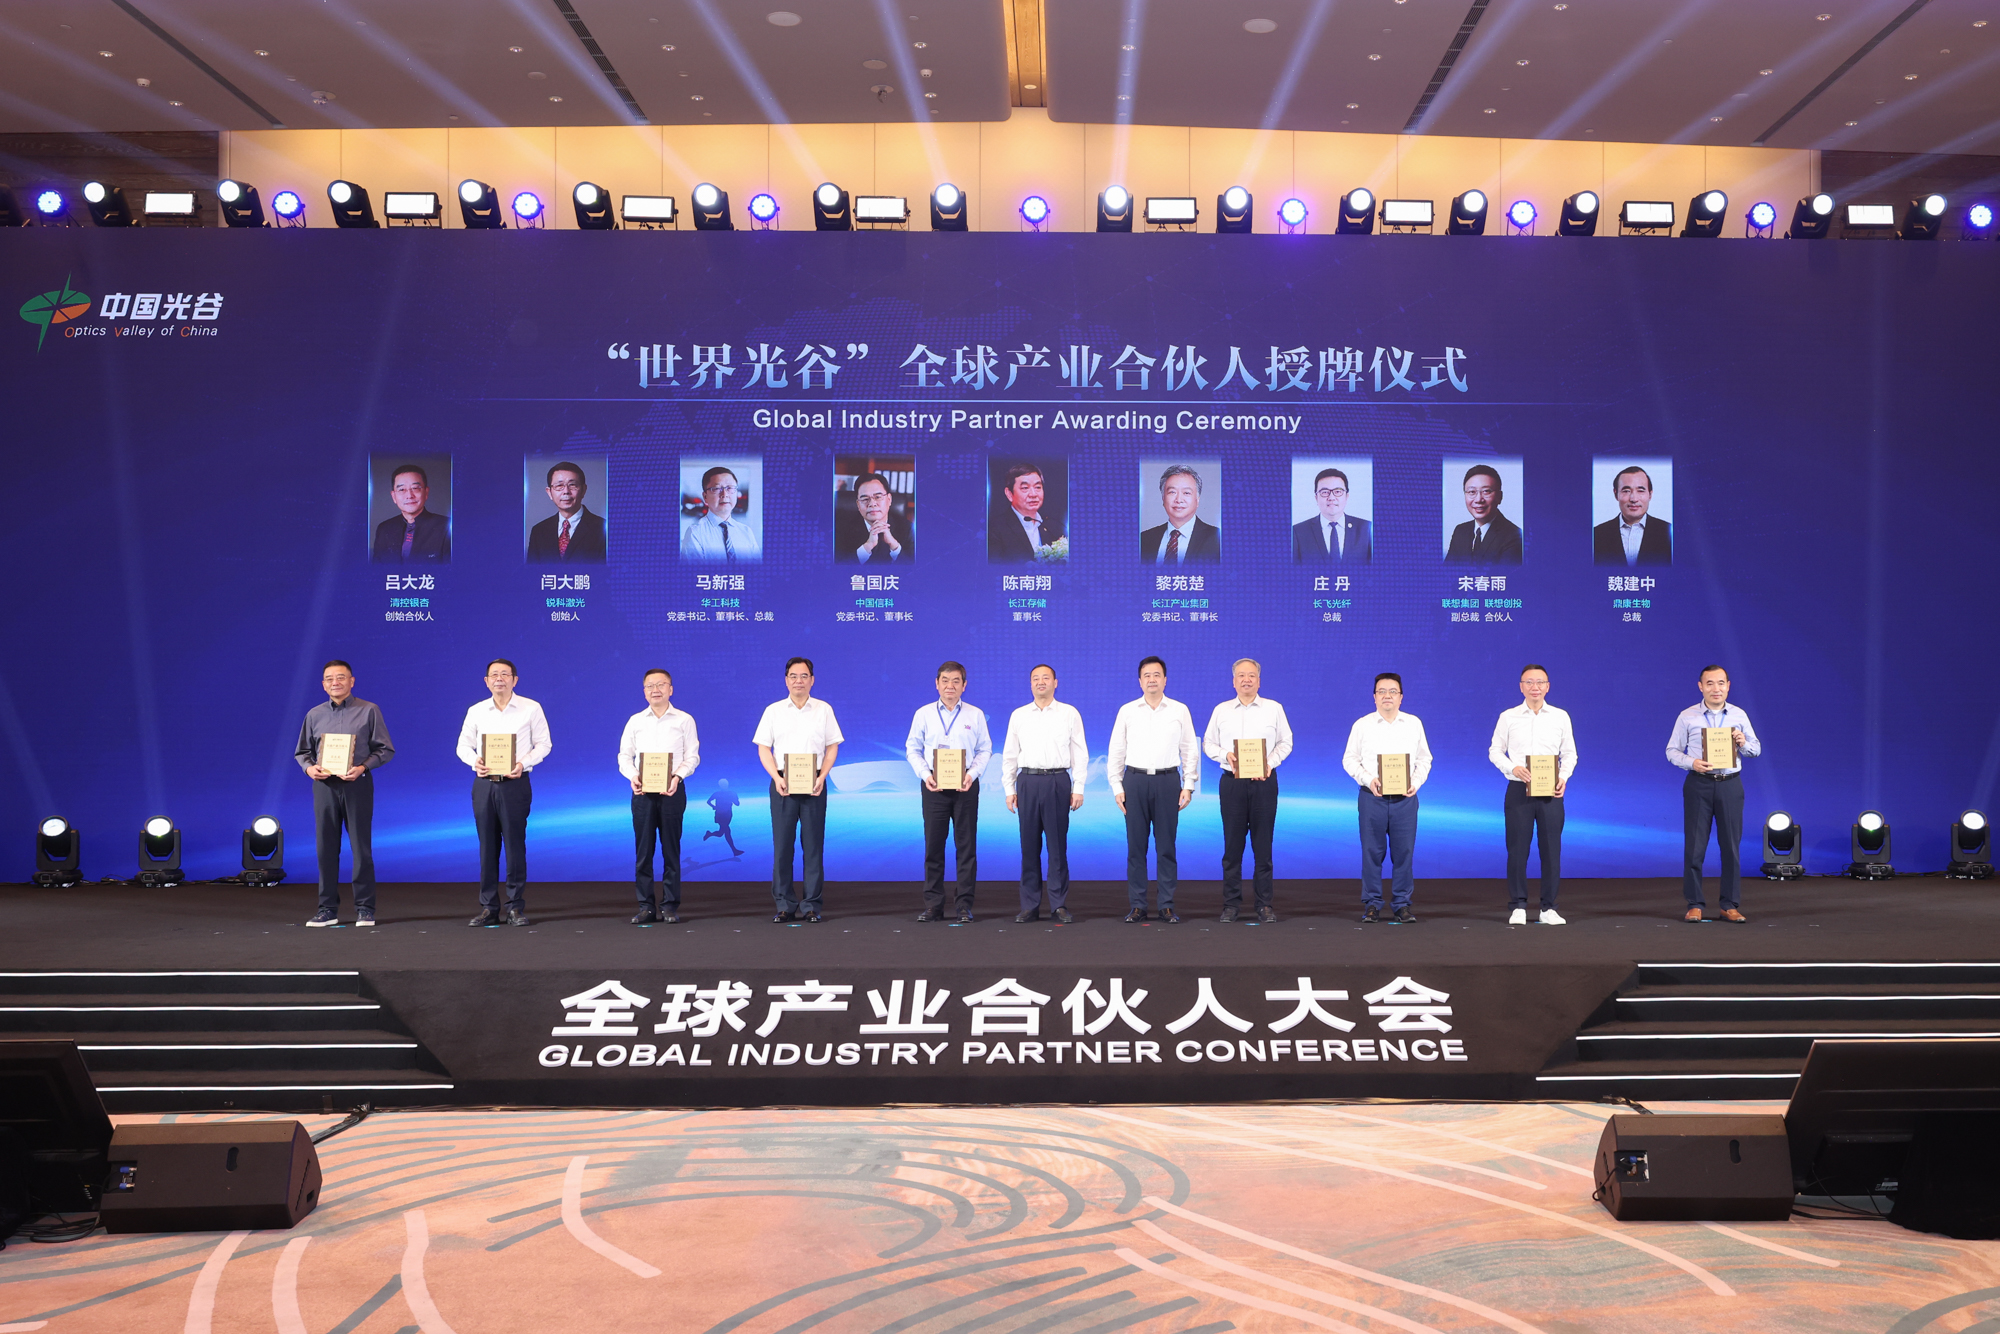 長江產業集團被授牌成為“世界光谷”全球產業合伙人